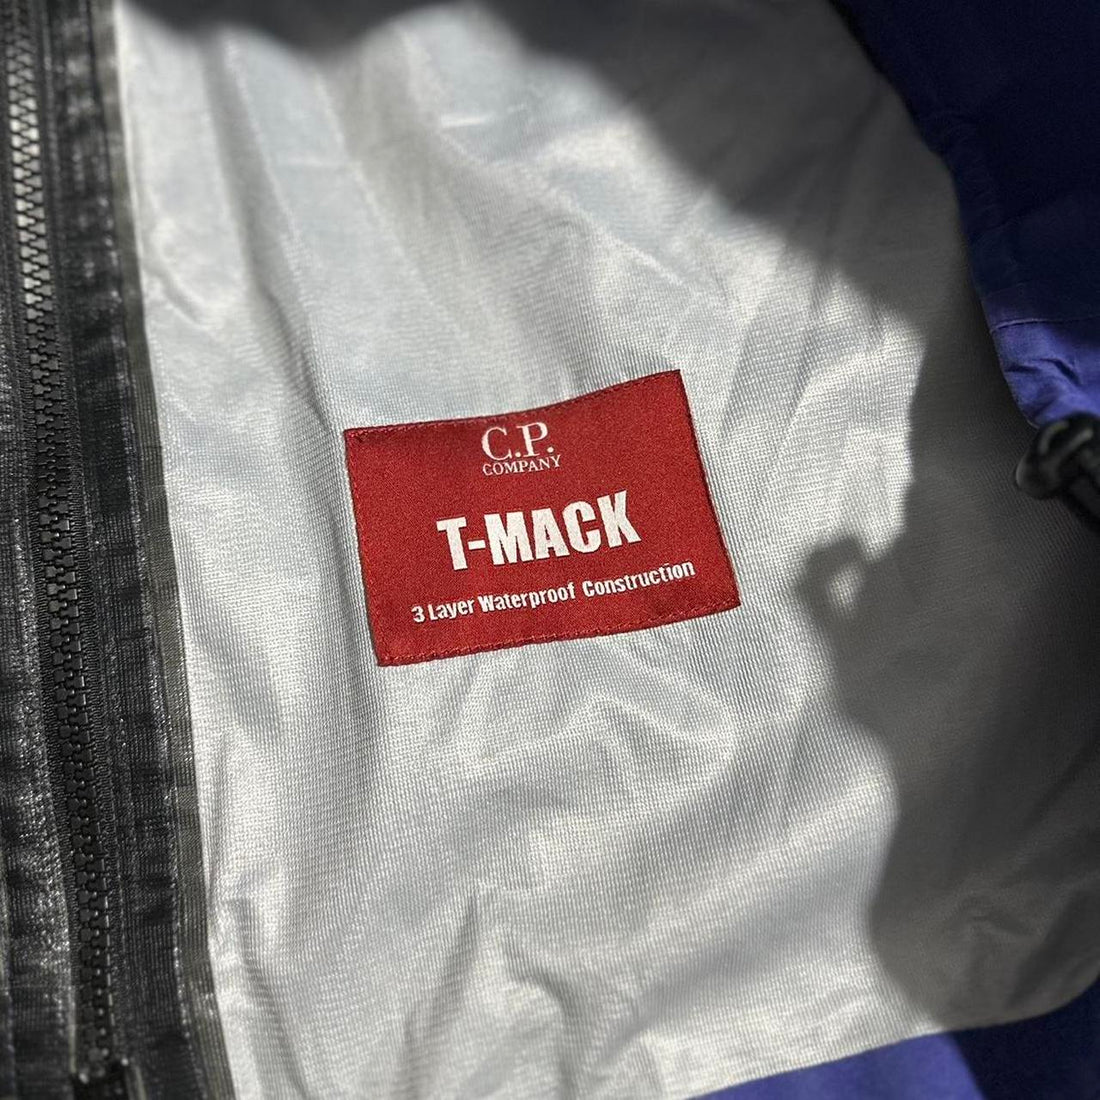 CP Company T-Mack Jacket